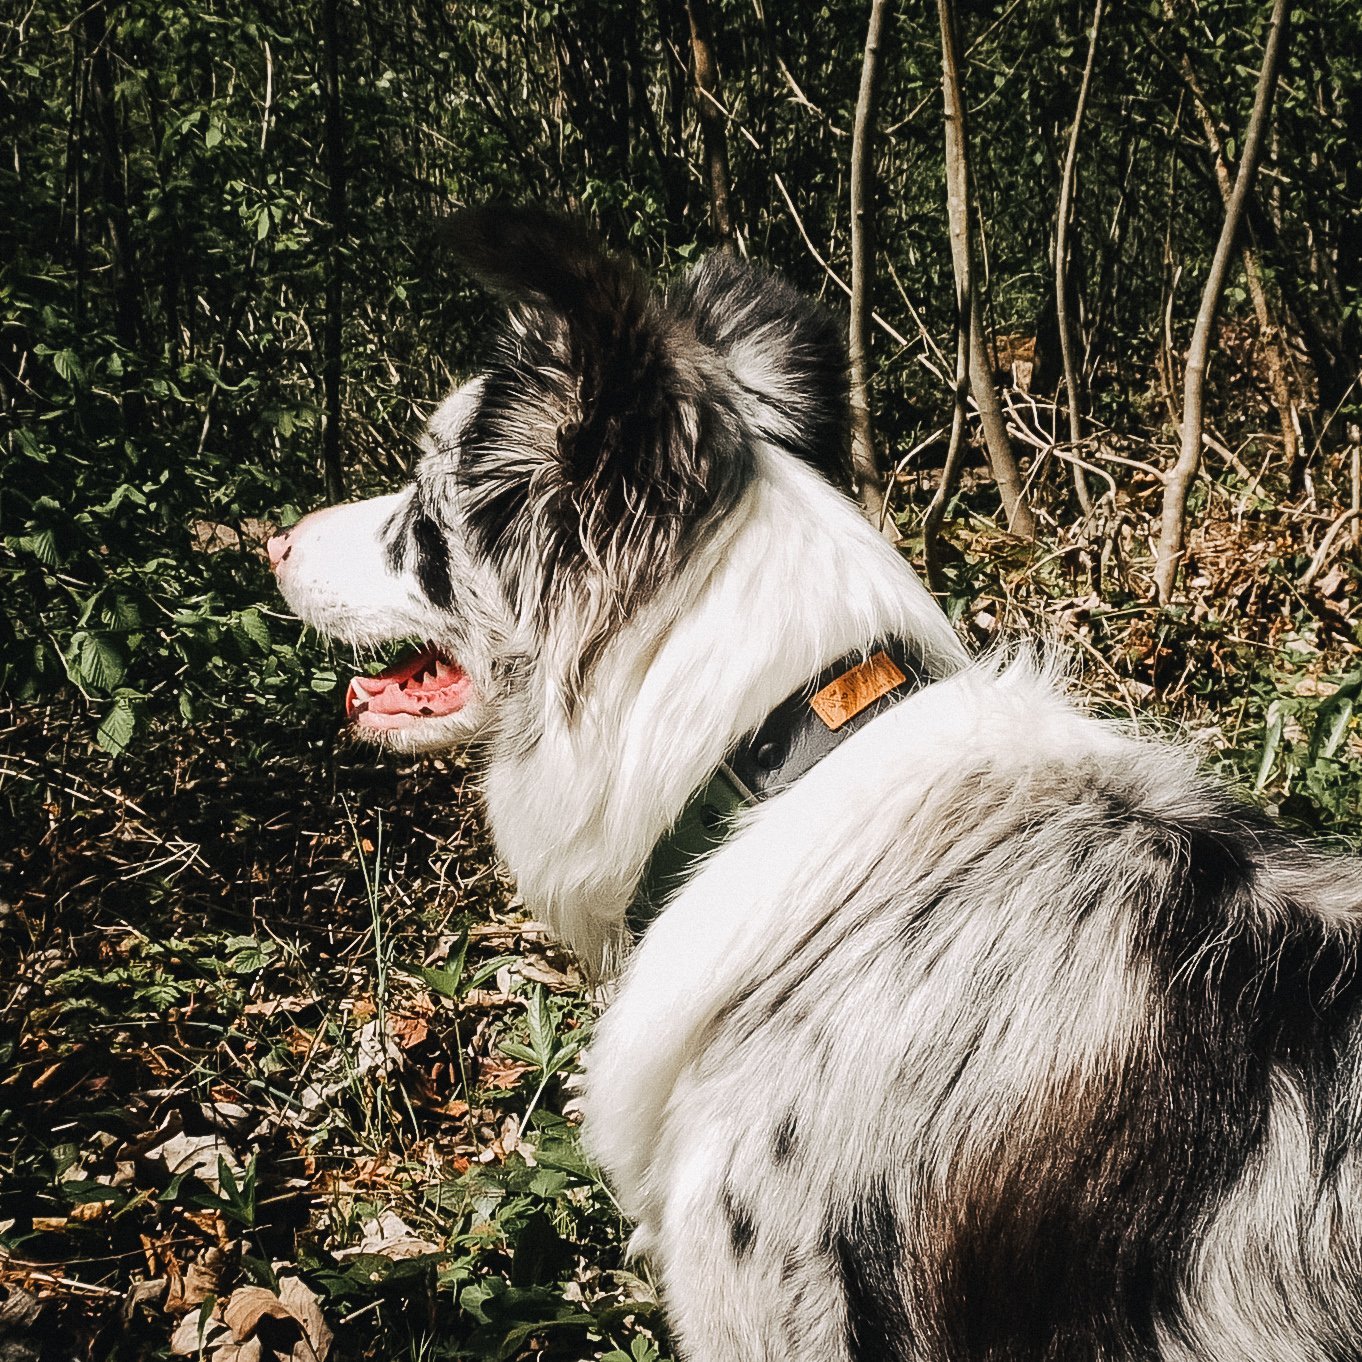 Biothane Hundehalsband für echte abenteuer-hunde & wasserratten ✔ 100% wasserfest ✔ langlebig & pflegeleicht ✔ hypoallergen hundehalsbänder